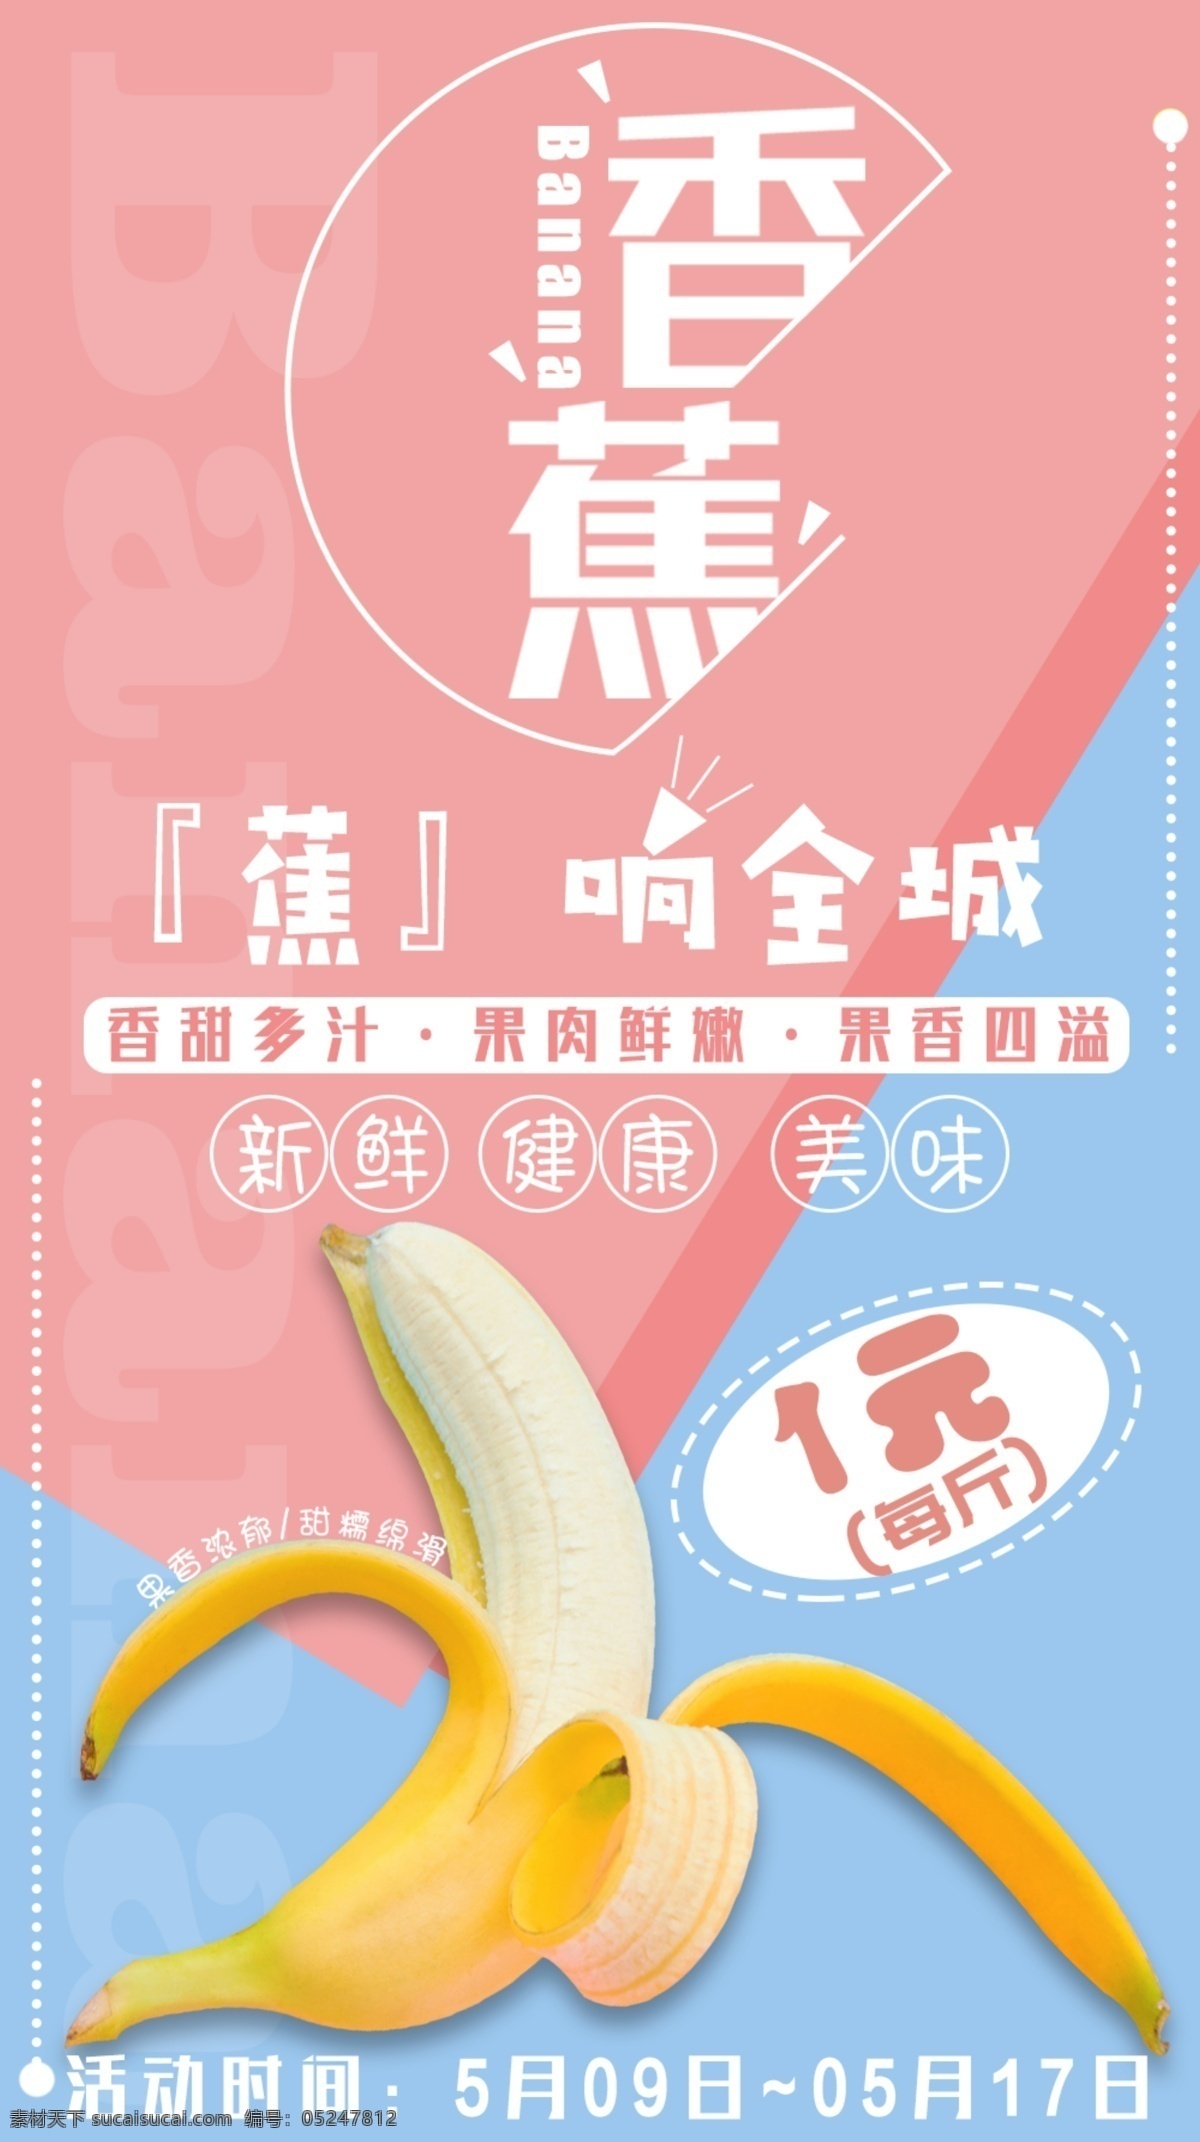 粉 蓝色 清新 香蕉 水果 创意 促销 海报 原创 简约 生鲜 新鲜 营销 特价 粉色